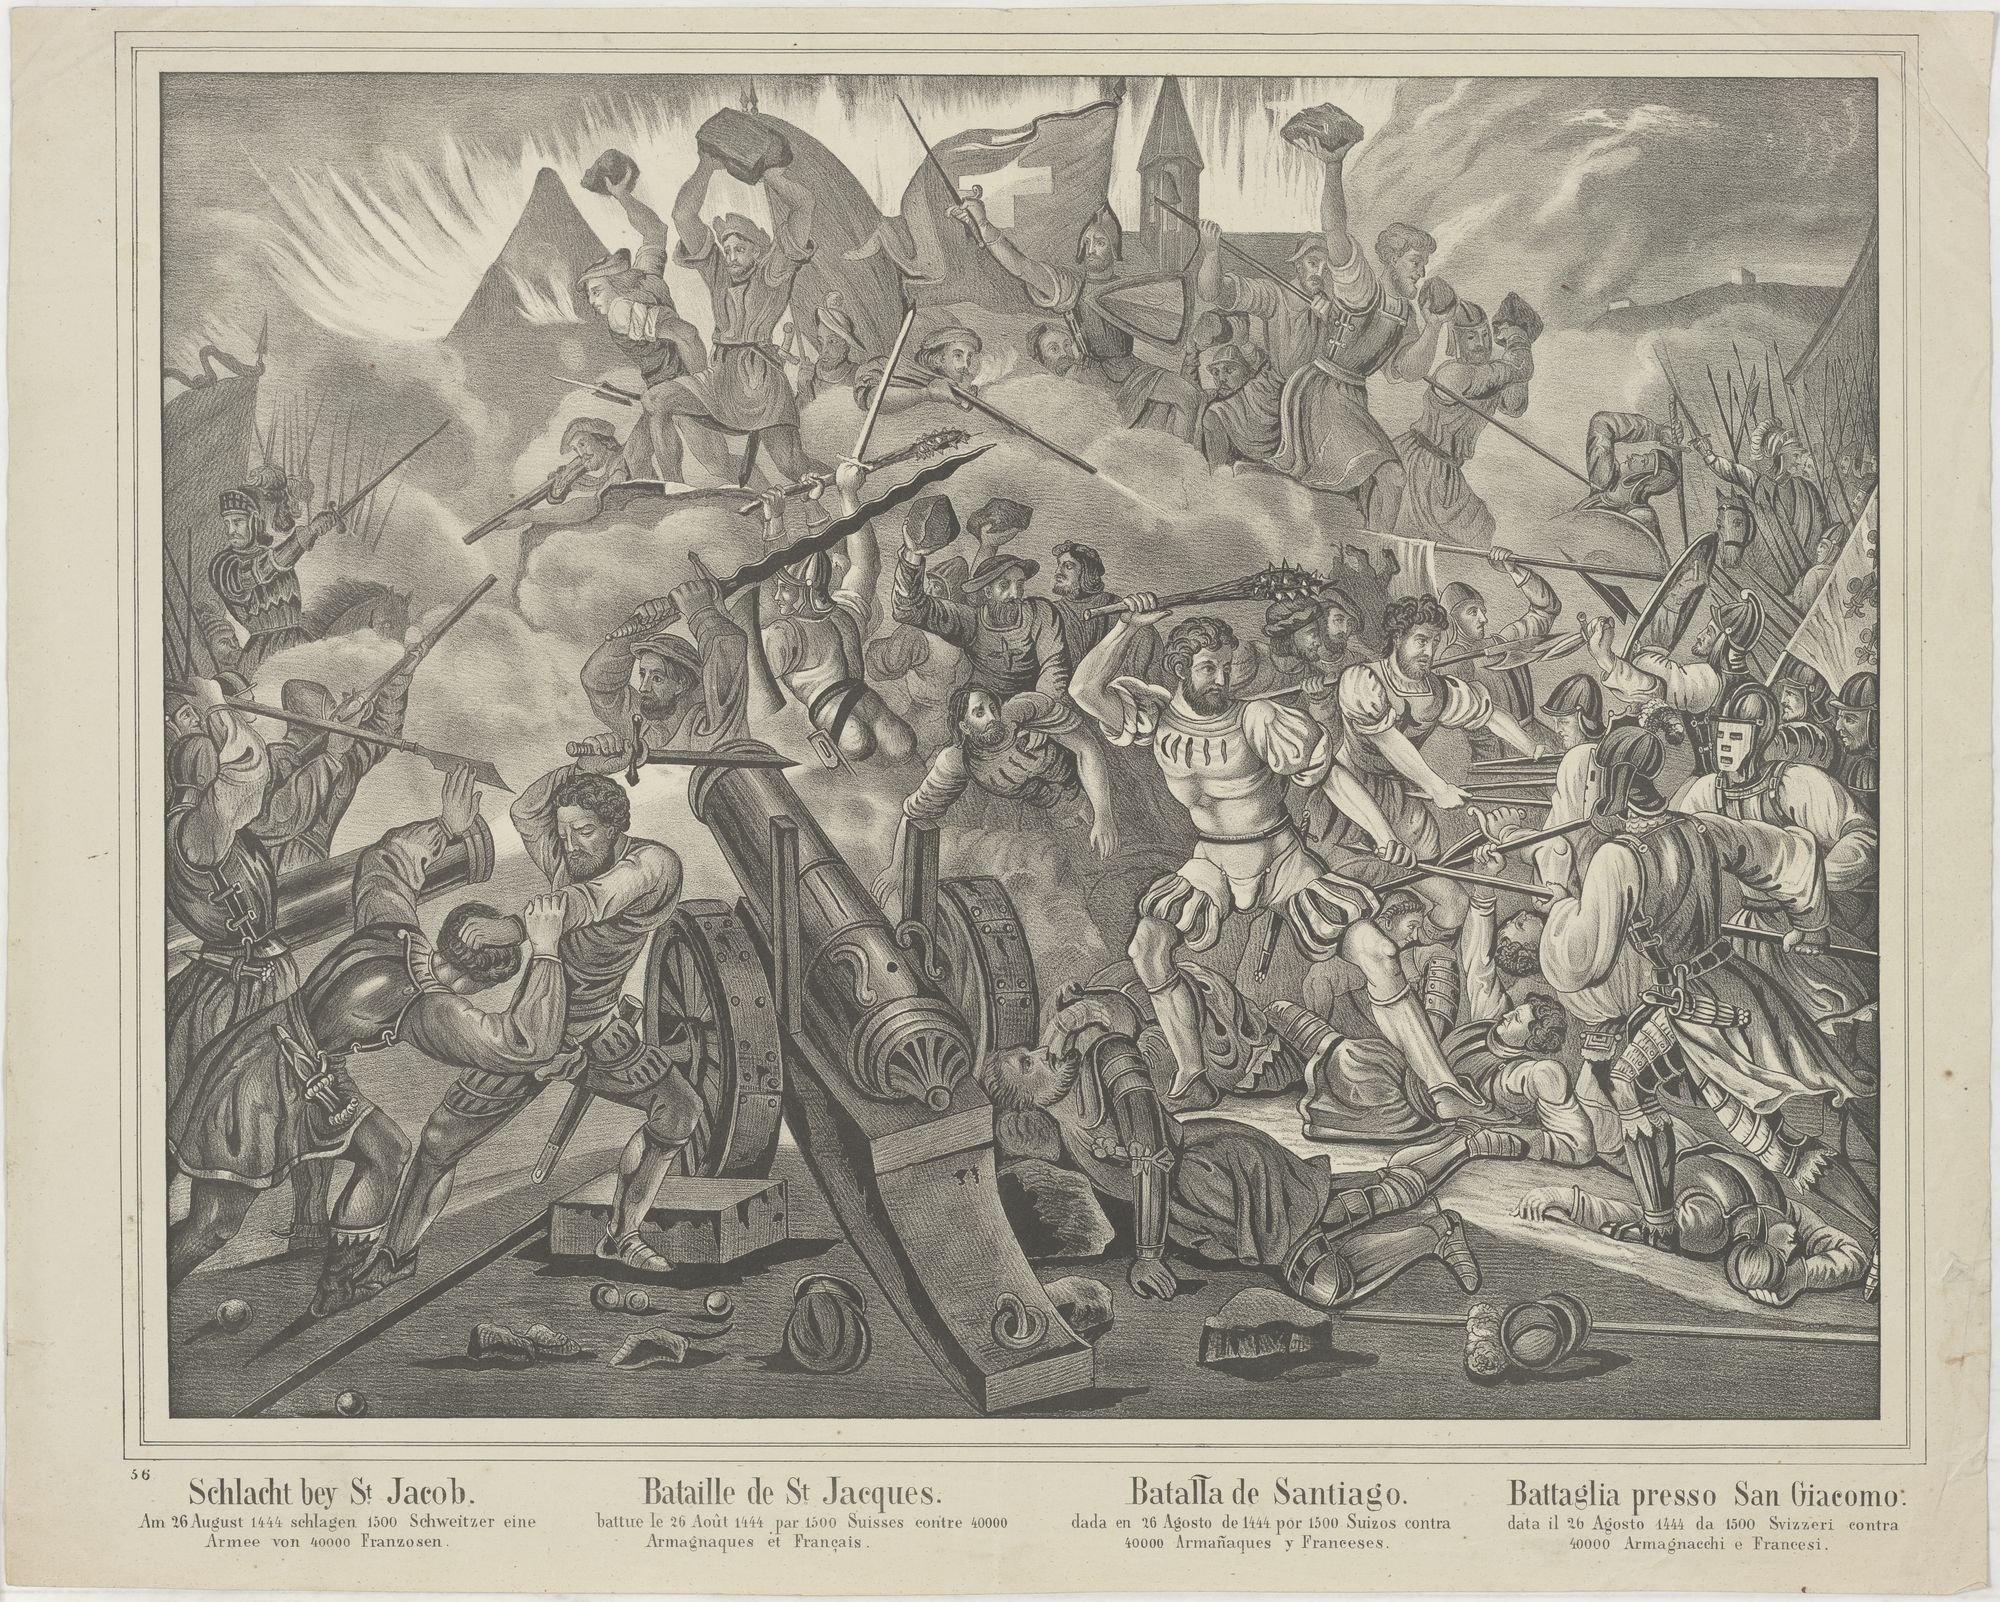 Schlacht bey St Jacob./ Am 26 August 1444 schlagen 1500 Schweitzer eine/ Armee von 40000 Franzosen. (Kulturstiftung Sachsen-Anhalt Public Domain Mark)